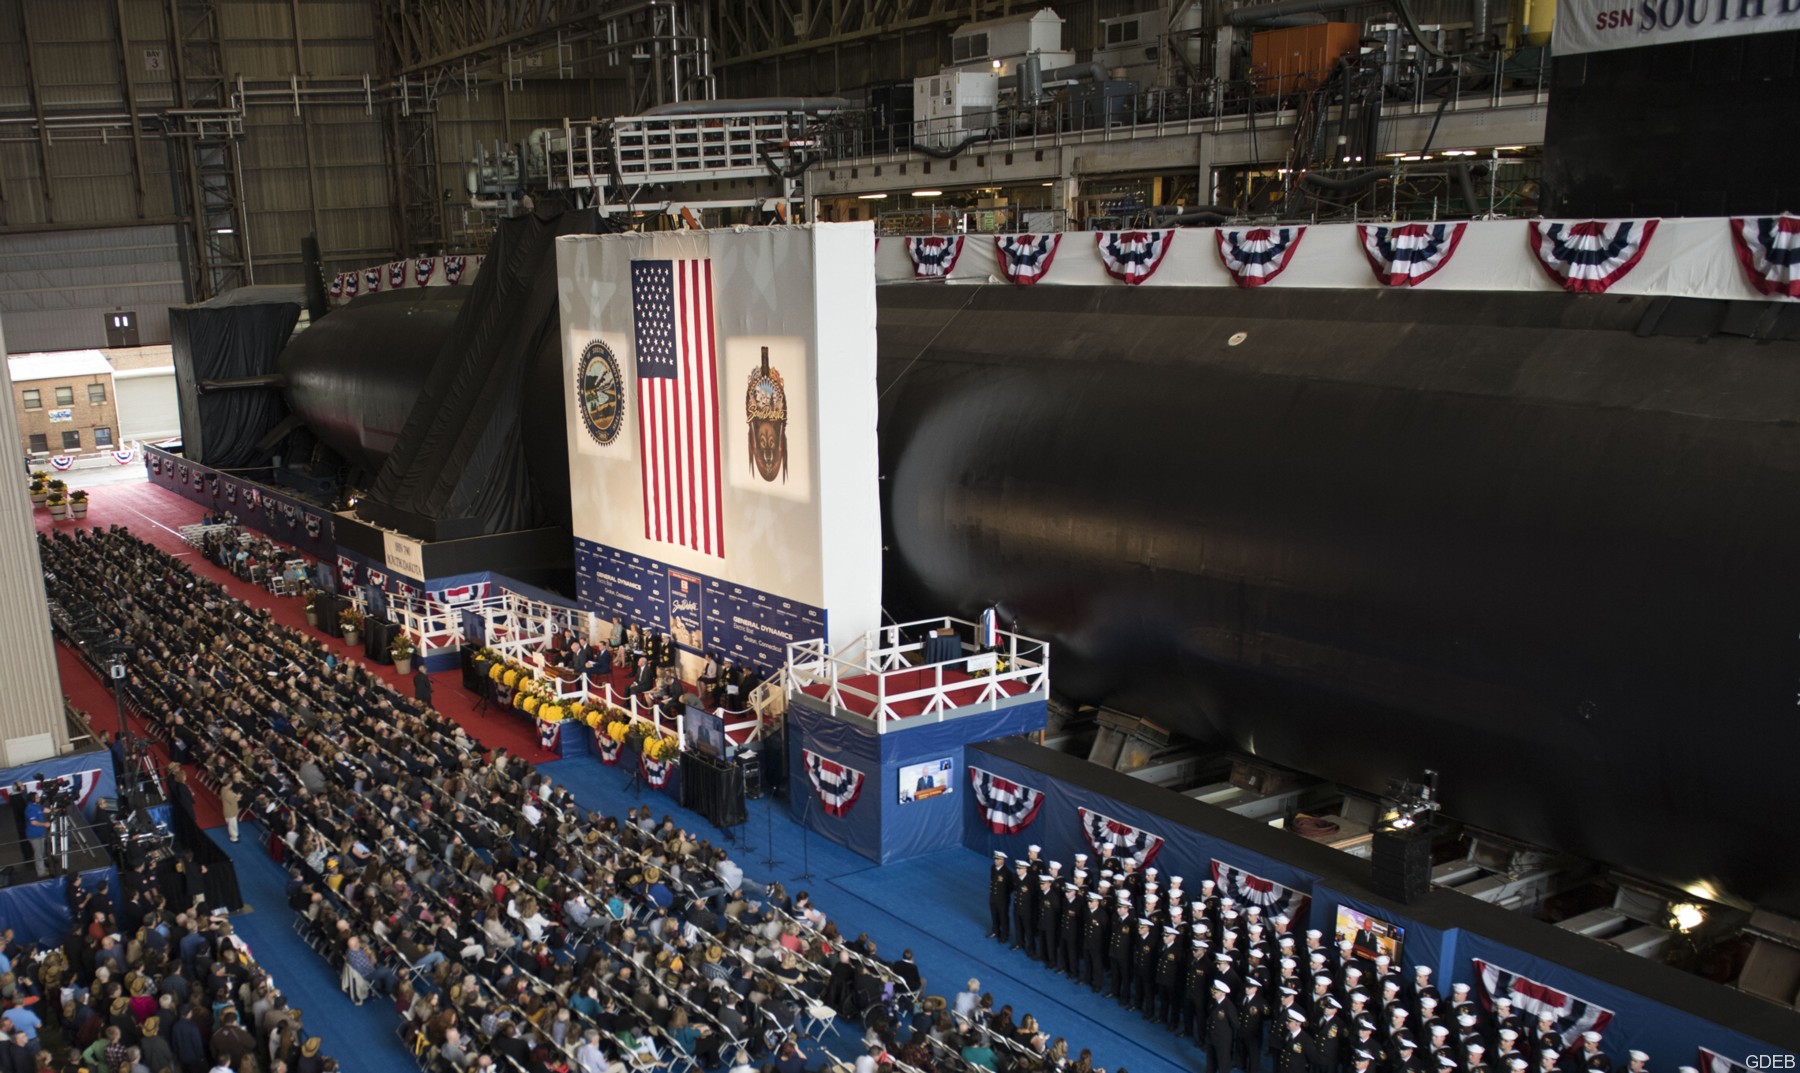 ssn-790 uss south dakota virginia class attack submarine us navy 02 christening ceremony groton gdeb